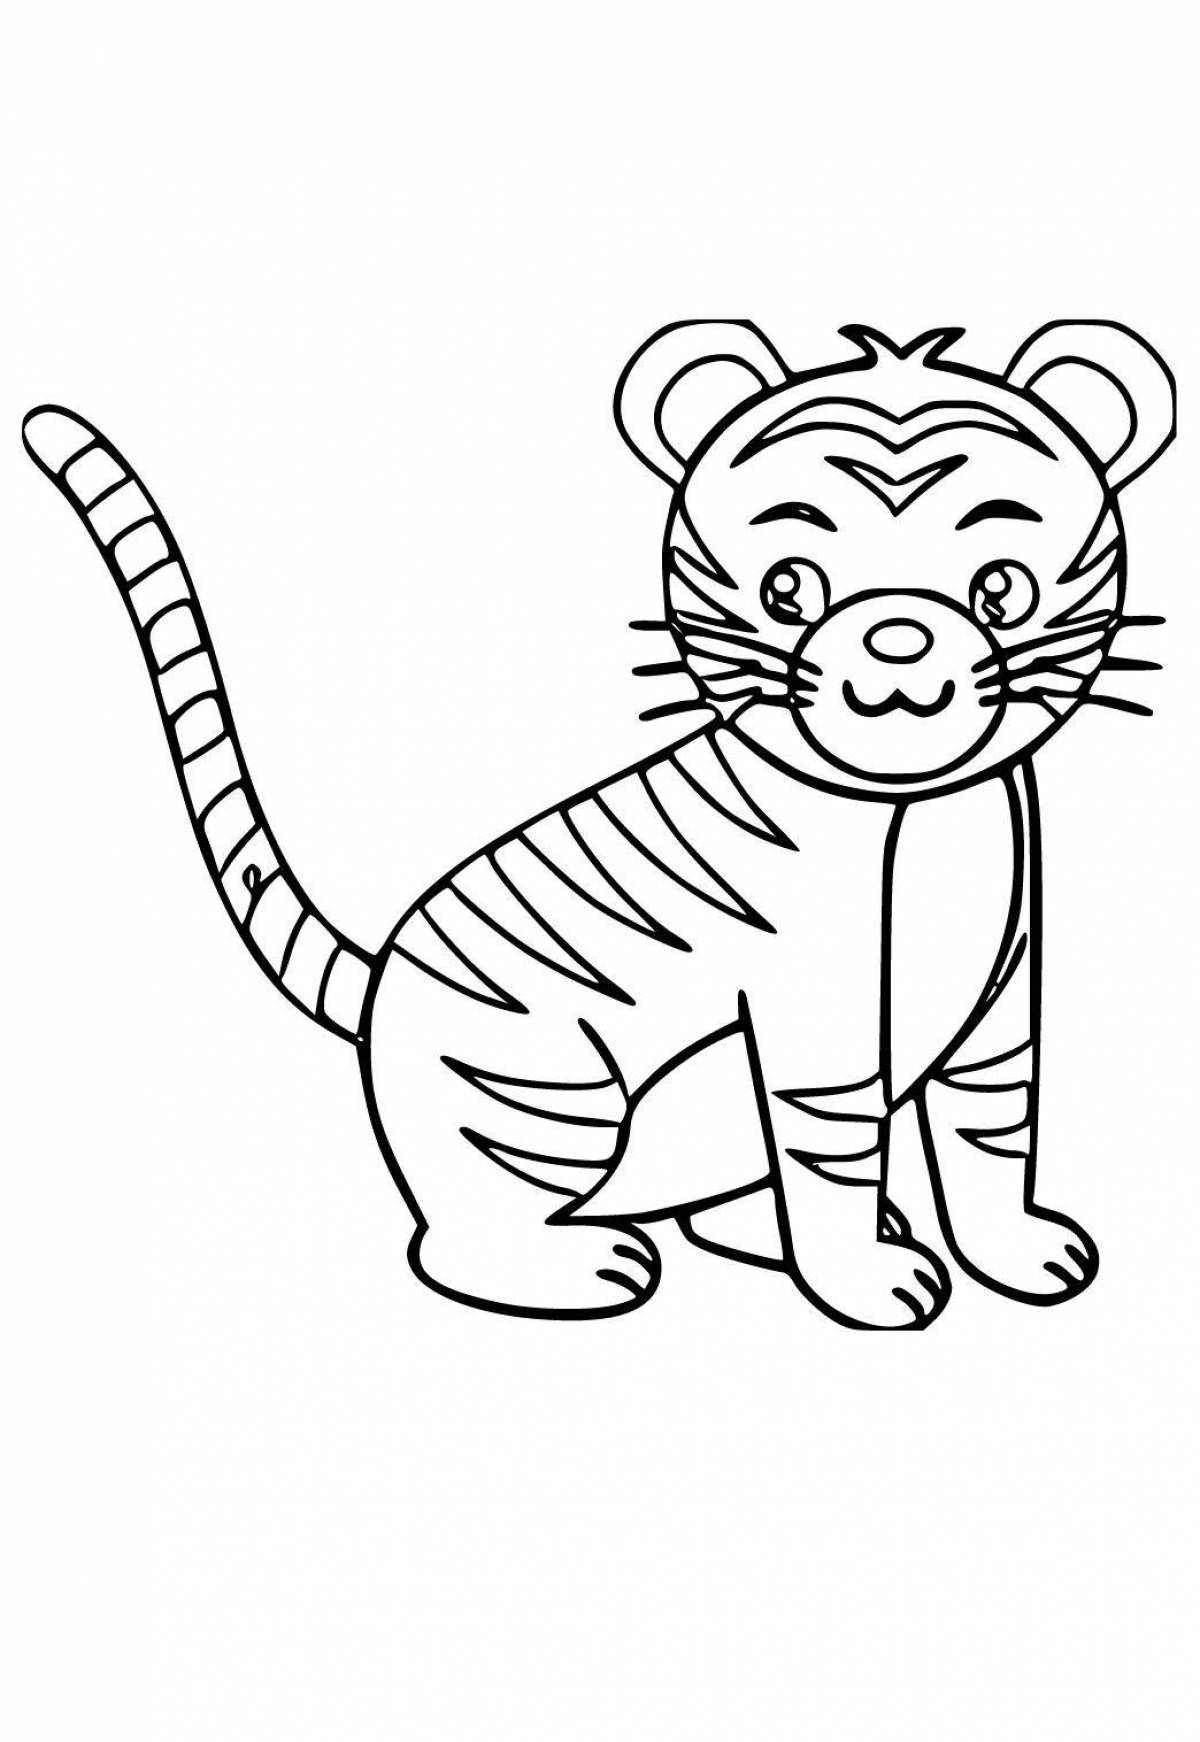 Причудливая раскраска тигра для детей